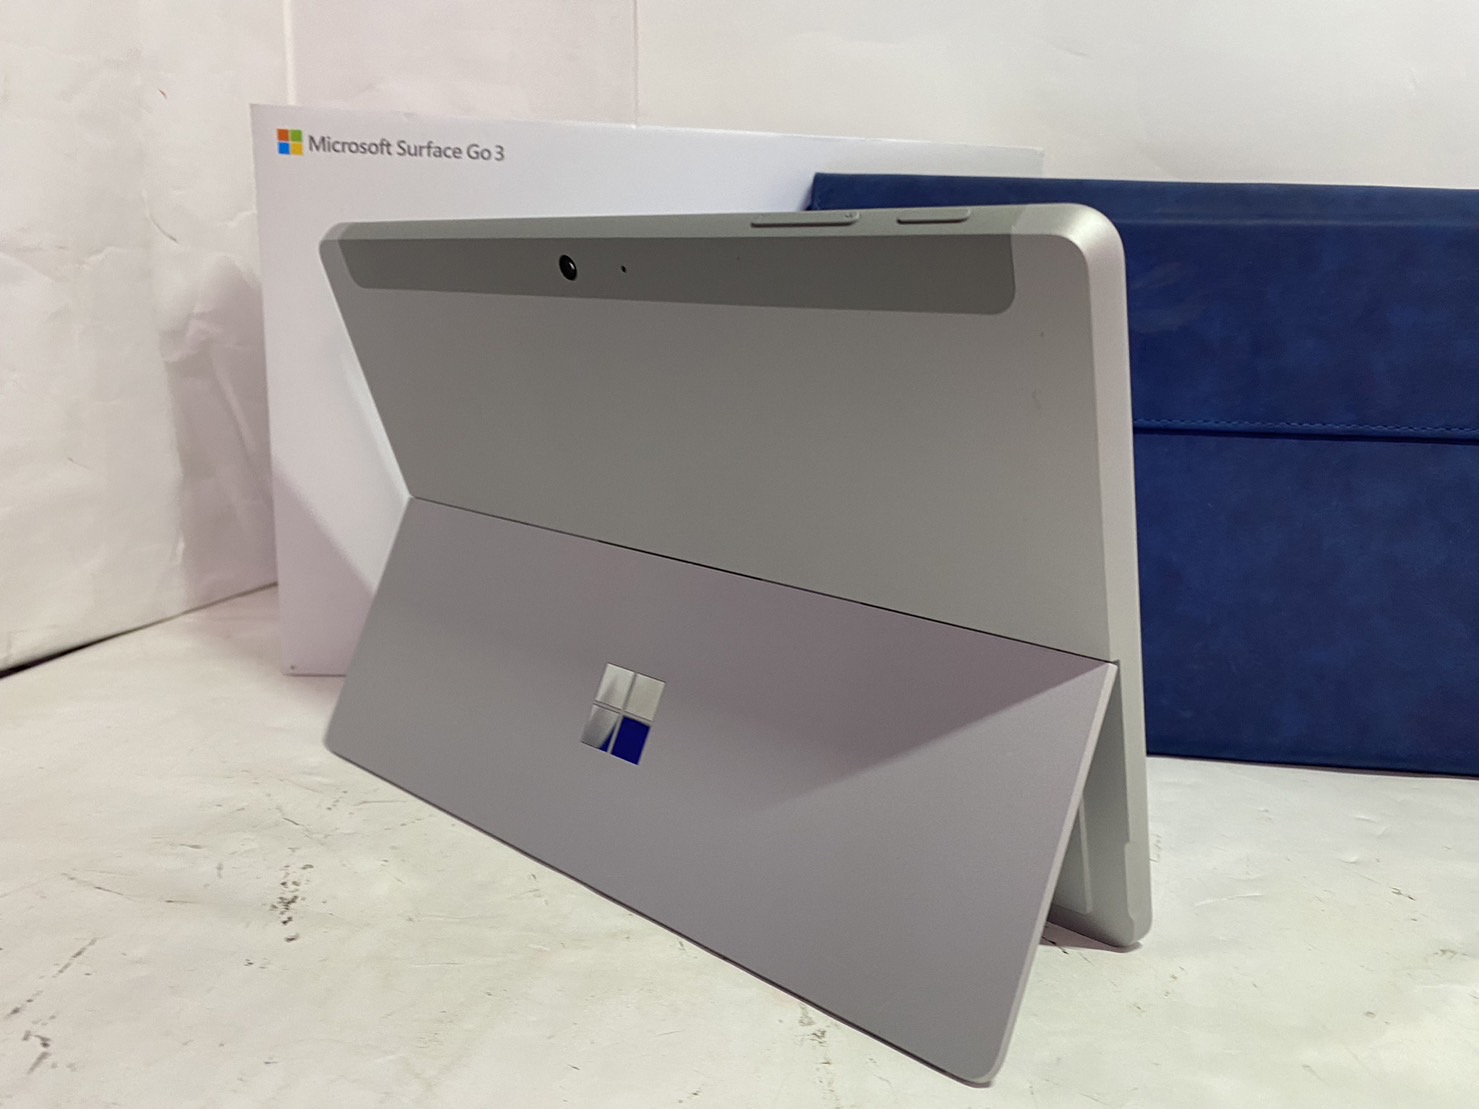 Microsoft(マイクロソフト) Surface Go3 1901 128GBの激安通販(詳細情報) - パソコンショップパウ